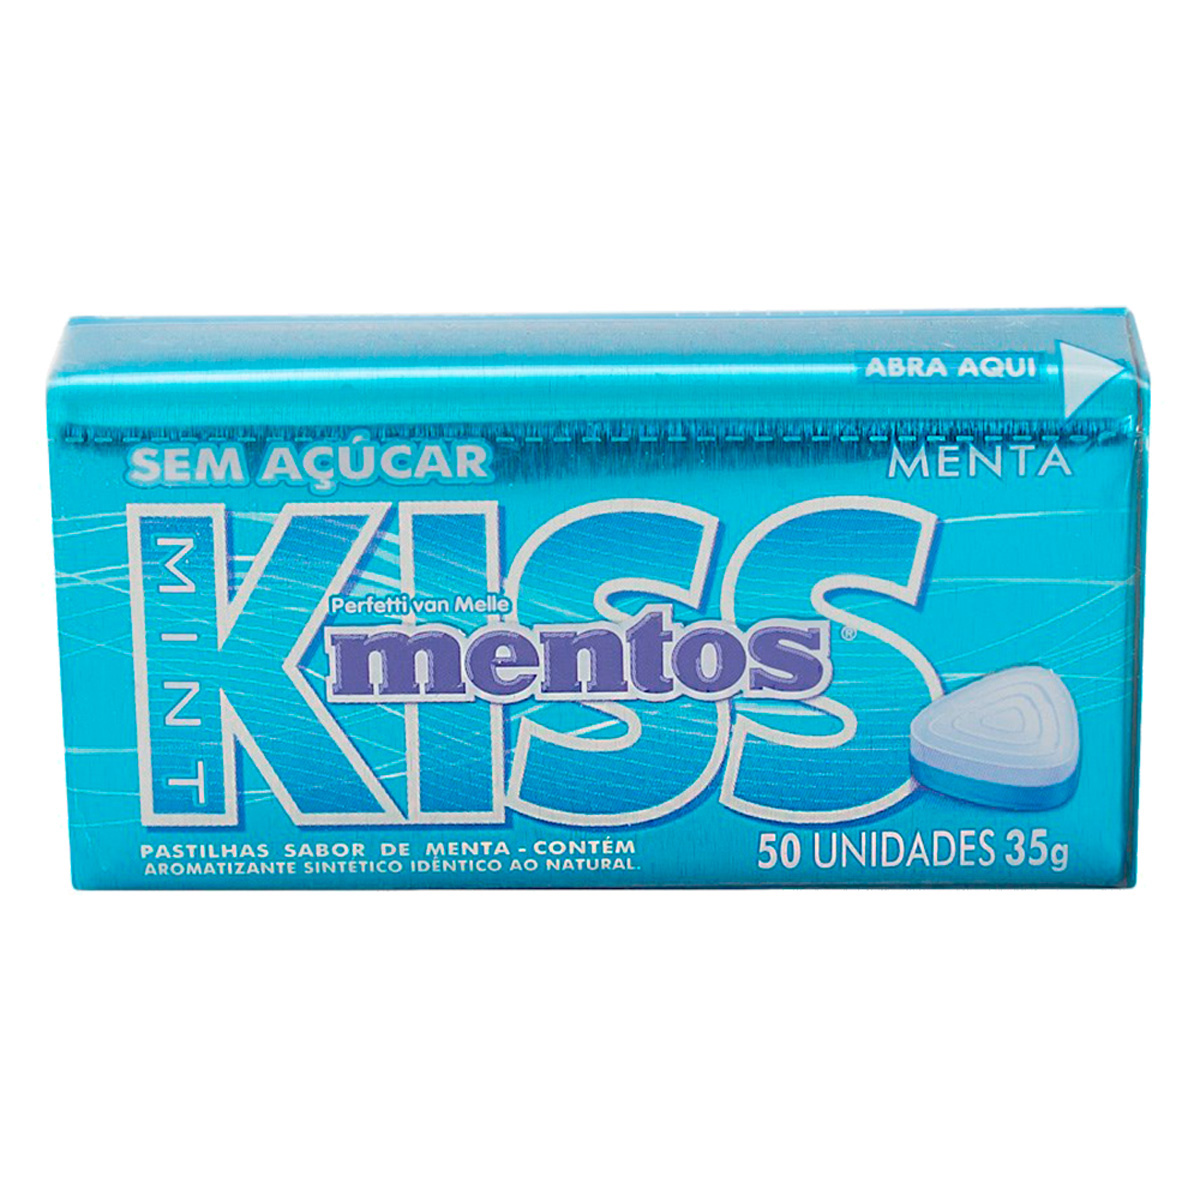 Bala Kiss Mentos Sabor Menta Sem Açúcar com 50 unidades